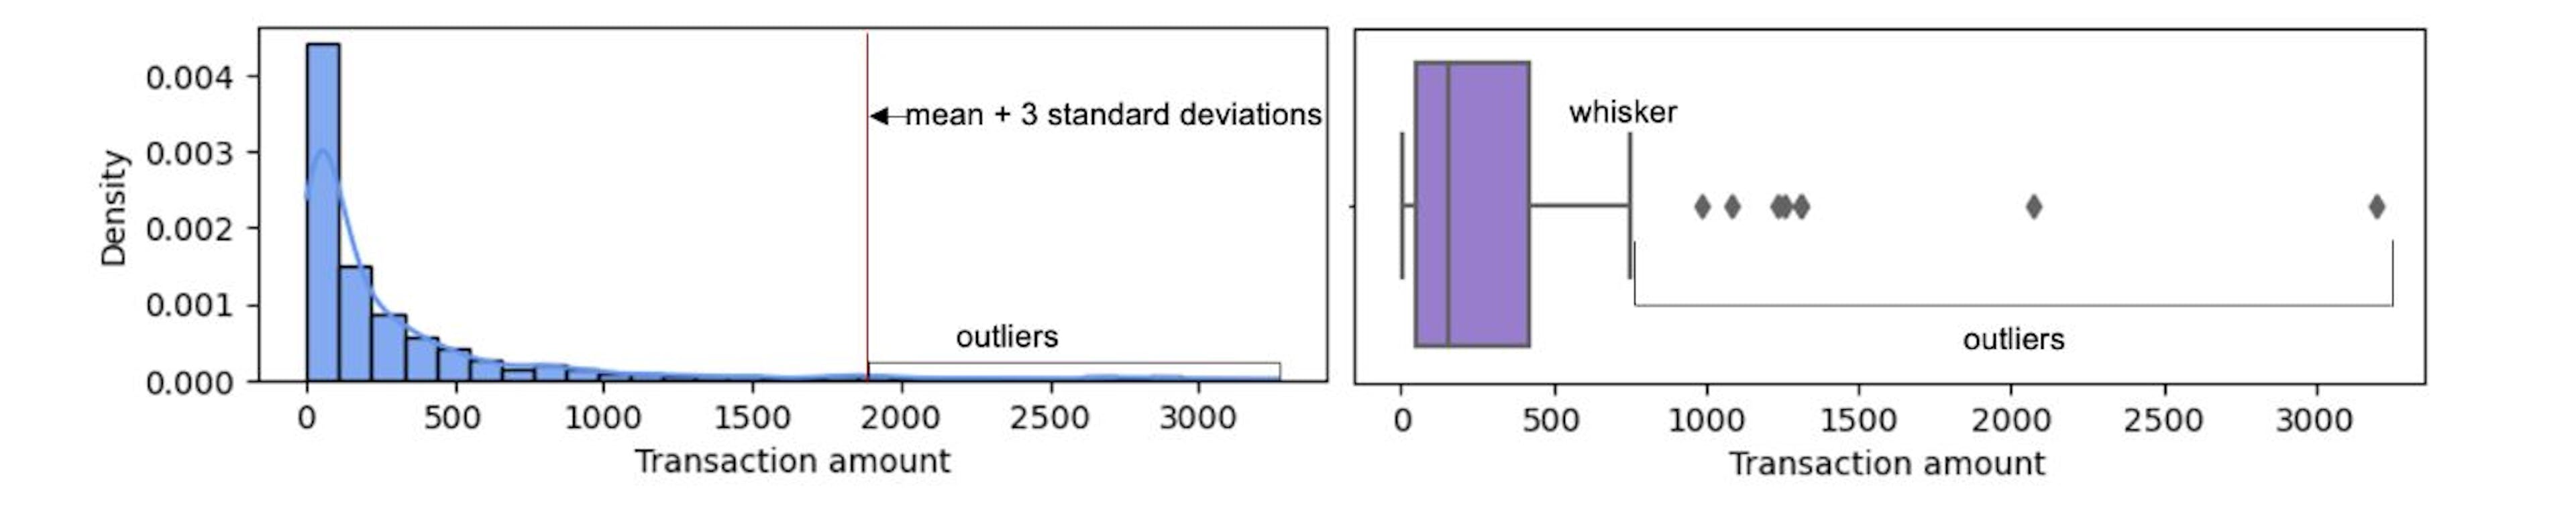 上图显示了两种常用的检测单变量异常值的技术。我们可以看到，这两种技术可以产生不同的异常值集。如果数据服从正态分布，则应使用均值+3 SD 技术。基于箱线图晶须的技术更为通用，可以应用于任何分布的数据。